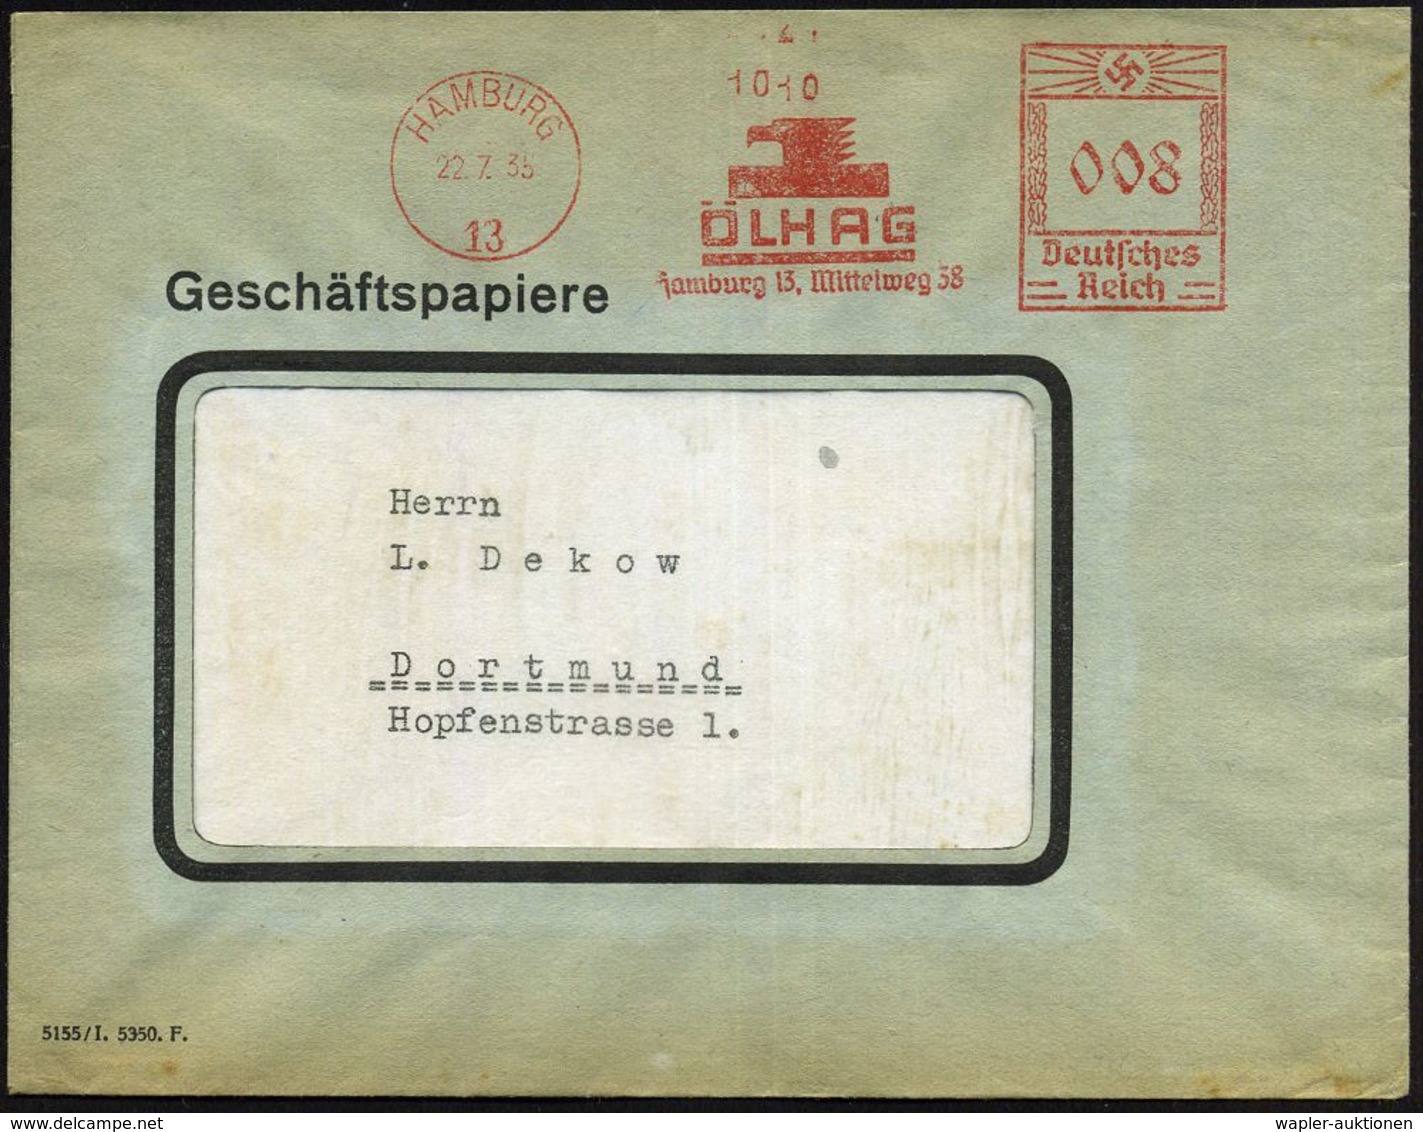 HAMBURG/ 13/ ÖLHAG.. 1935 (22.7.) AFS (Adlerkopf-Logo) Inl.-Bf. (Dü.E-3BAh) - CHEMIE / PRODUKTE / CHEMISCHE INDUSTRIE -  - Scheikunde